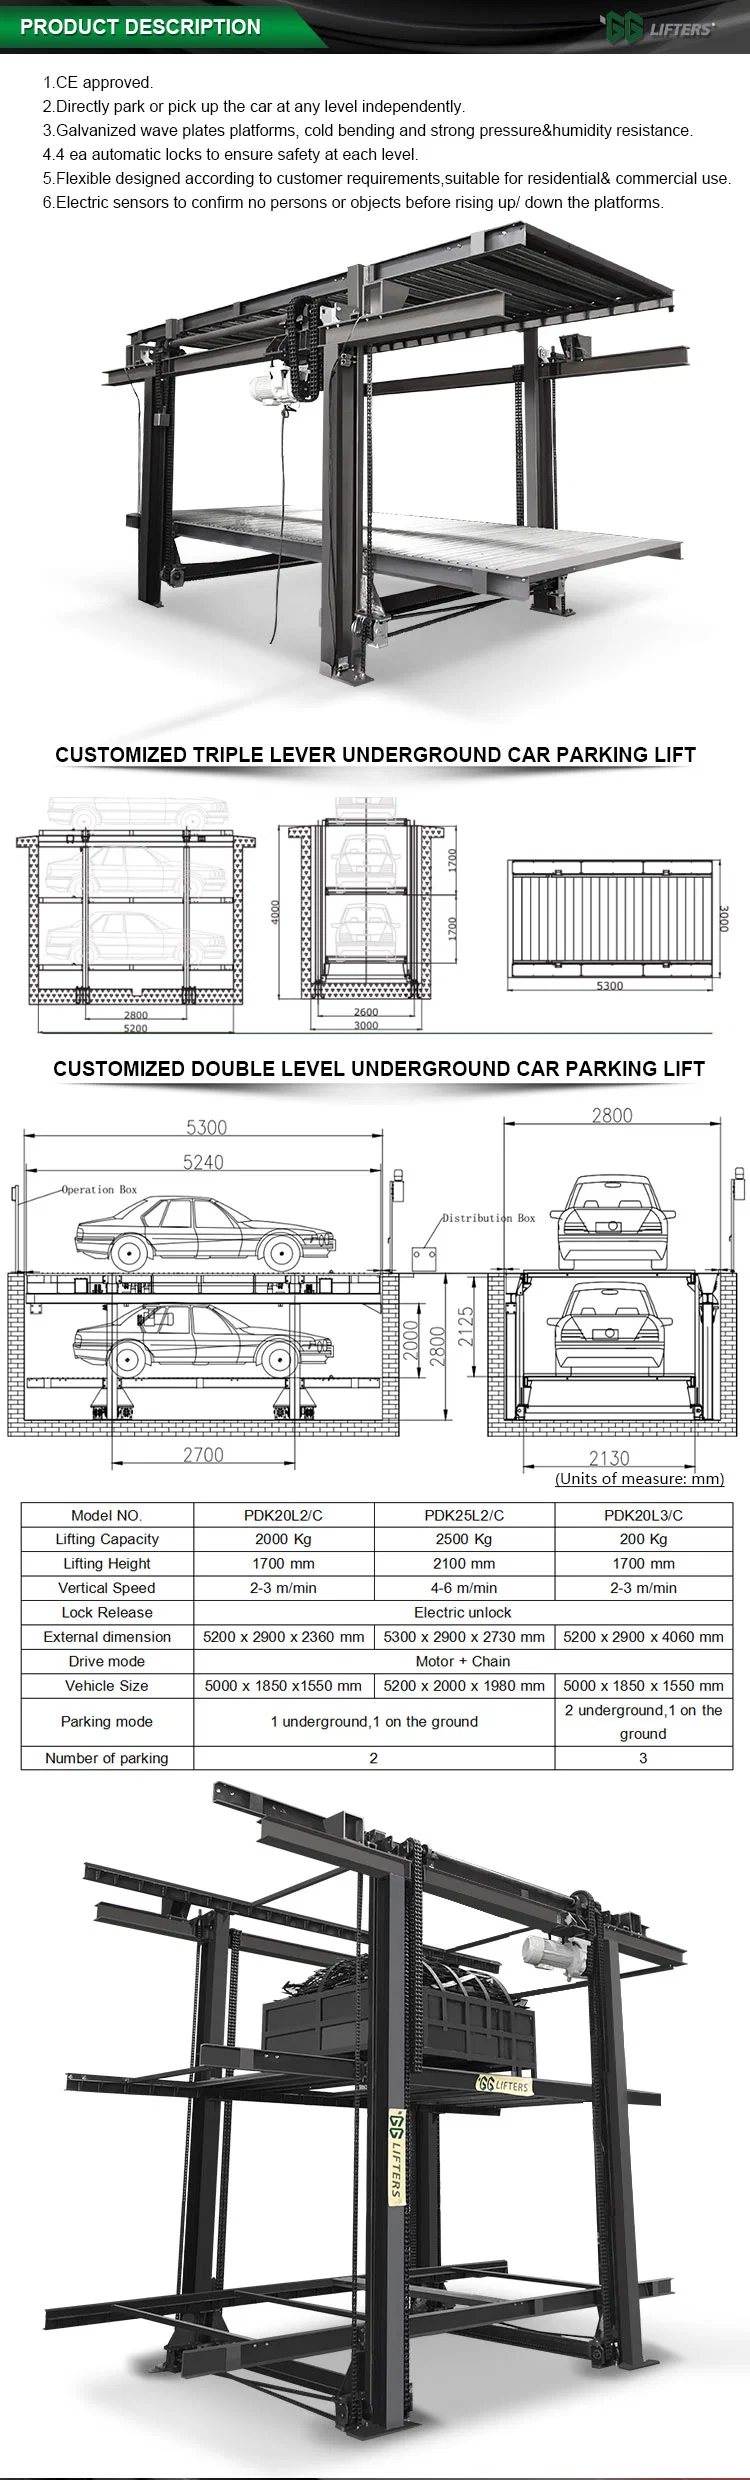 motor driven house garden underground parking lift platform